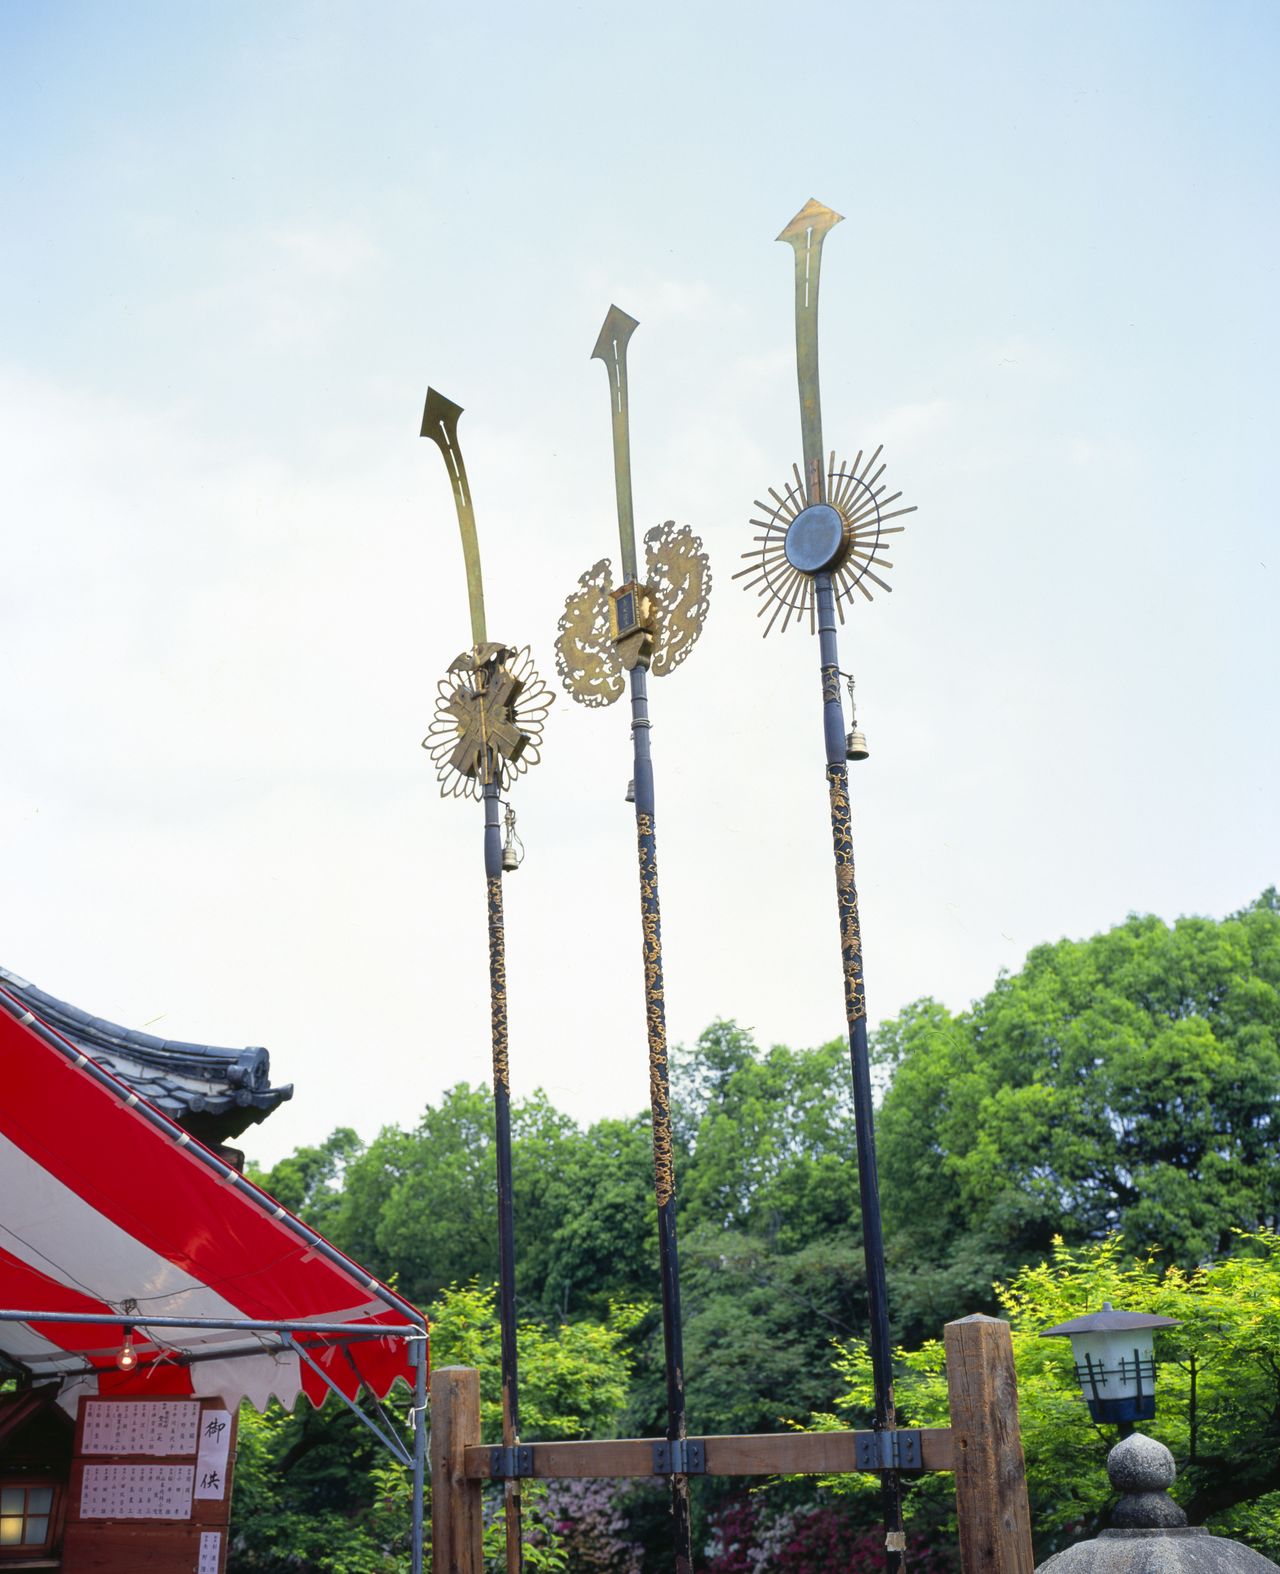 神泉苑的“剑矛”。矛是引领神轿巡游的祭器，相传这就是祇园祭上山矛的原型